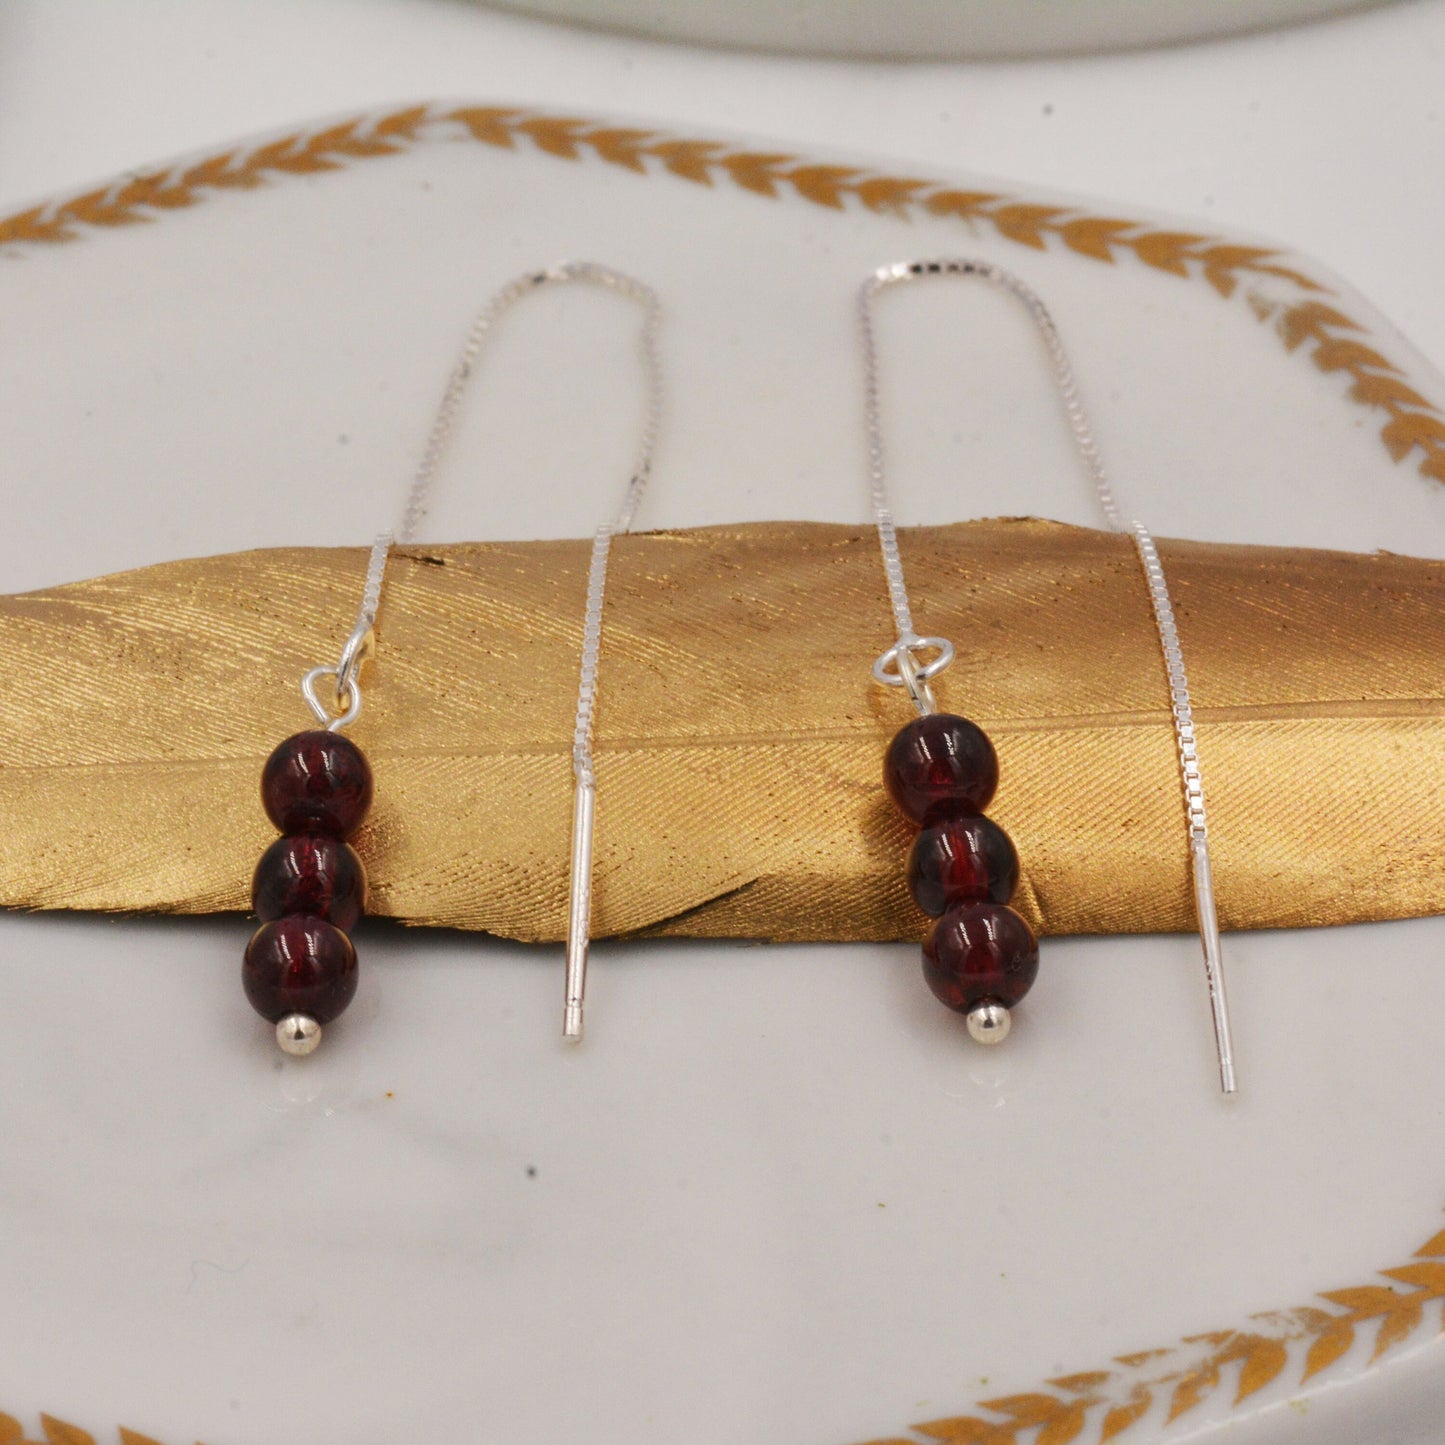 Genuine Garnet Gemstone Ear Threaders in Sterling Silver, Three Beads Threader Earrings, Ear Jacket. Dark Red Garnet Crystals